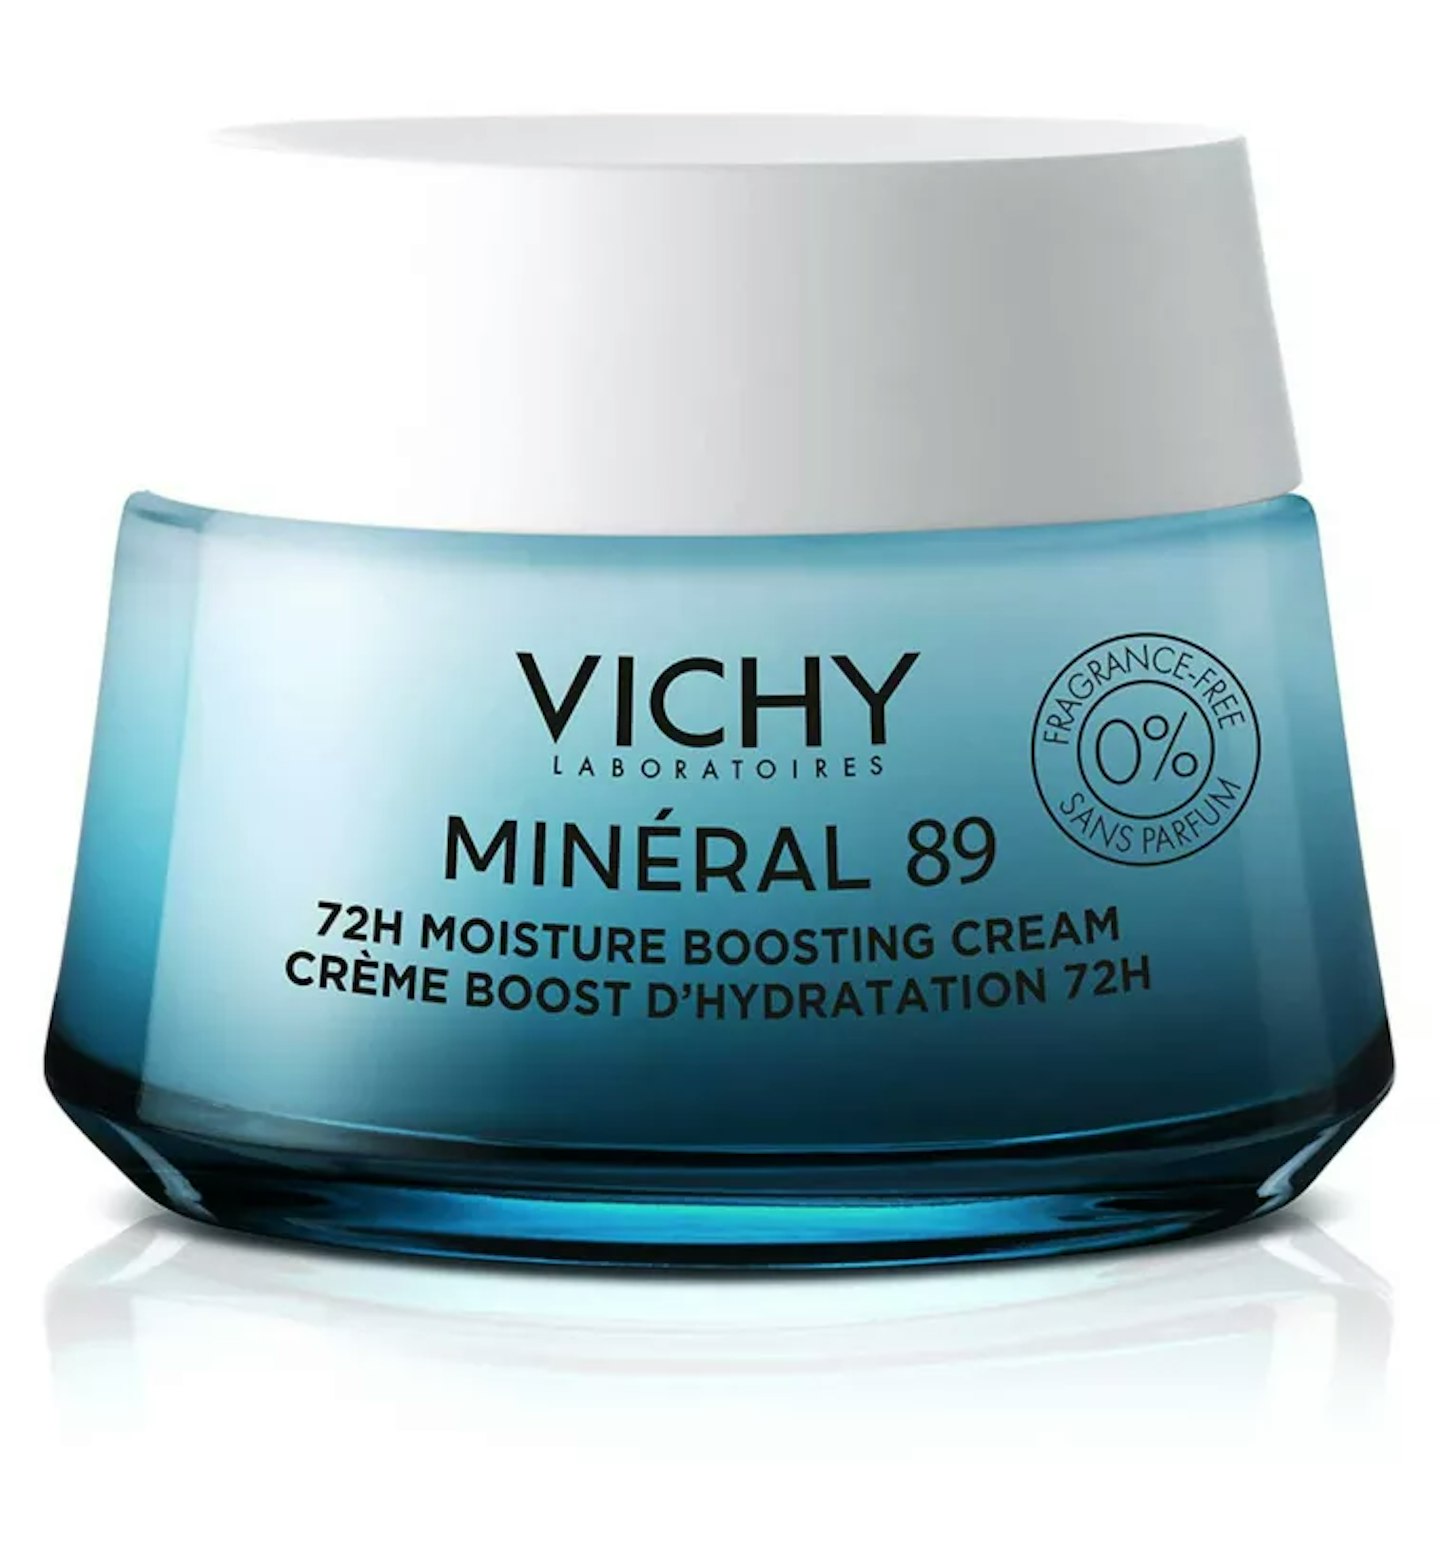 Vichy Minéral 89 72HR Moisture Boosting Cream